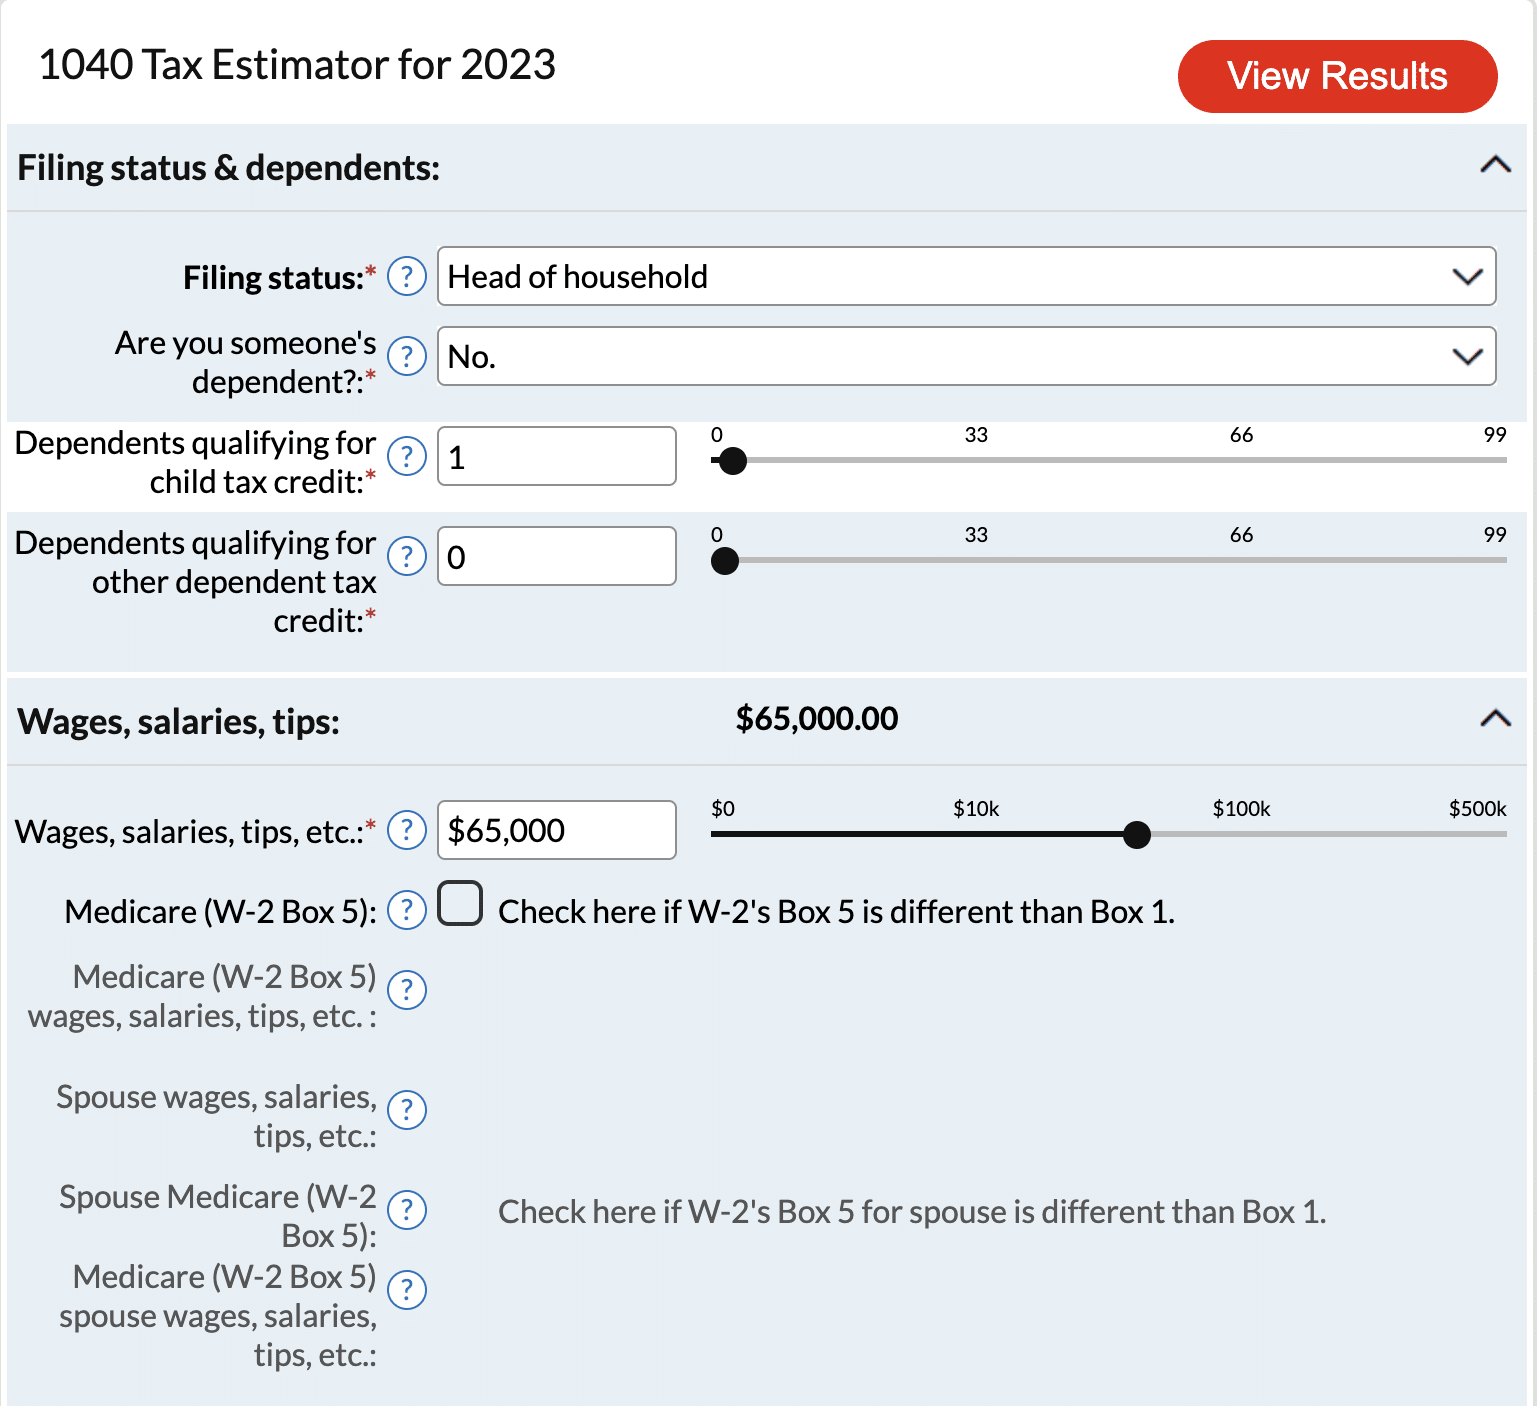 AARP 1040 Tax Estimator for 2023